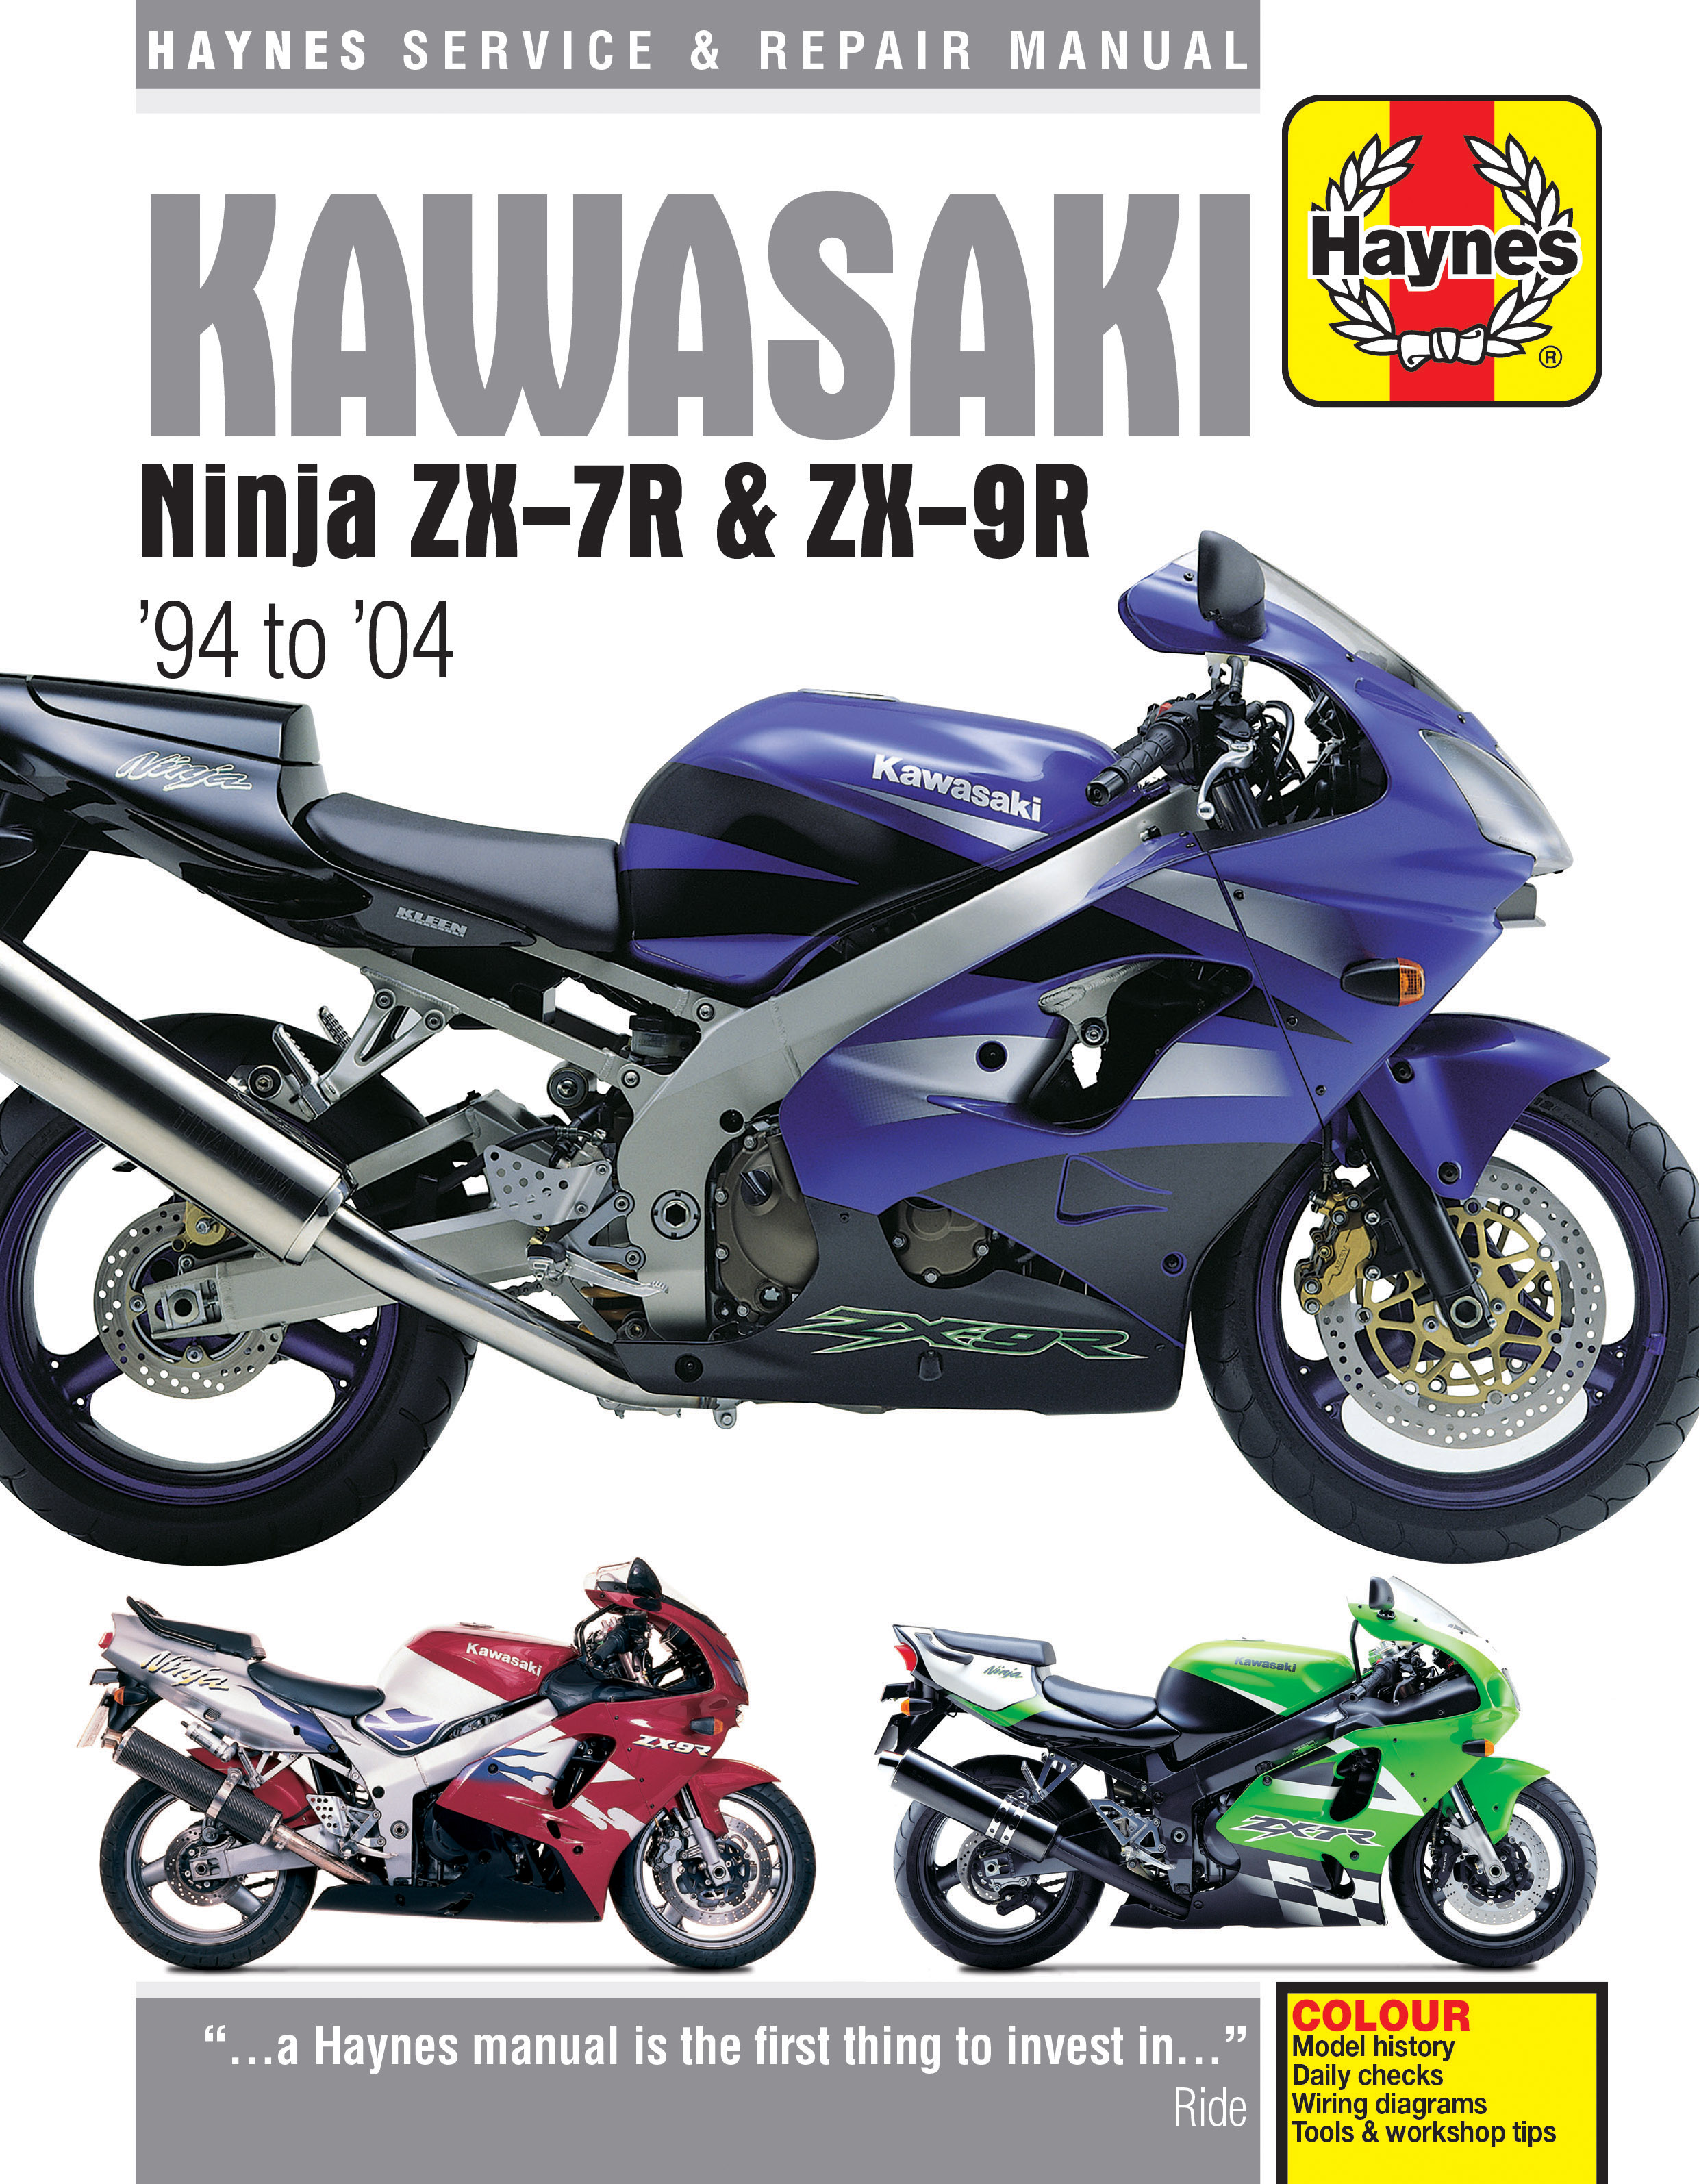 Kawasaki Ninja ZX-7R & ZX-9R (94 - 04) Haynes Repair Manual